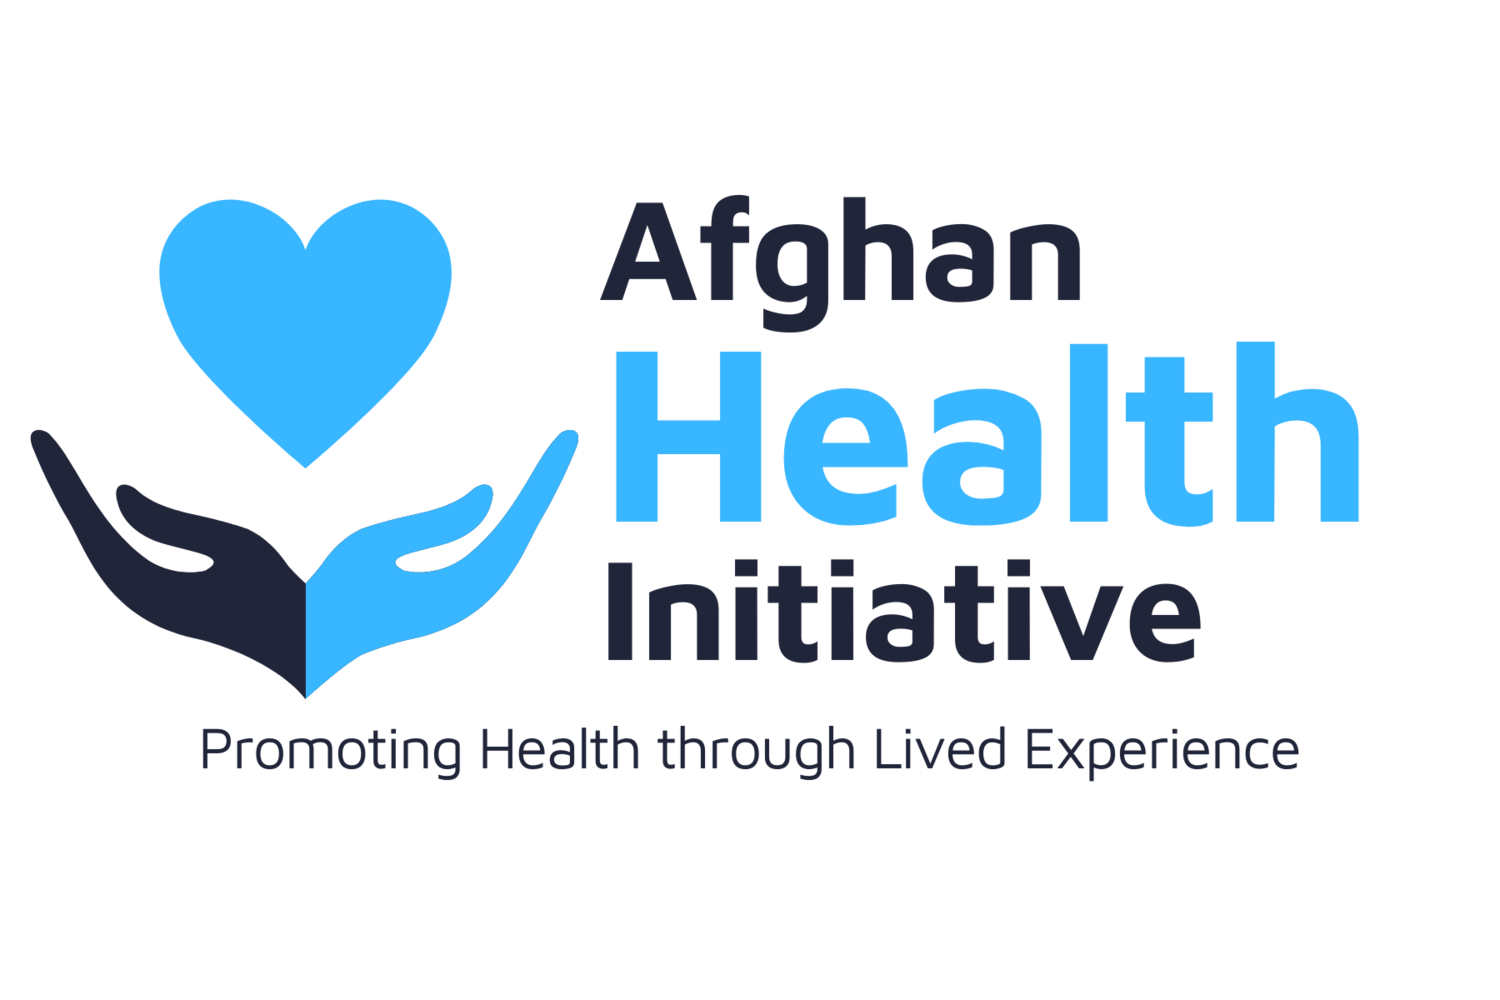 Afghan Health Initiative